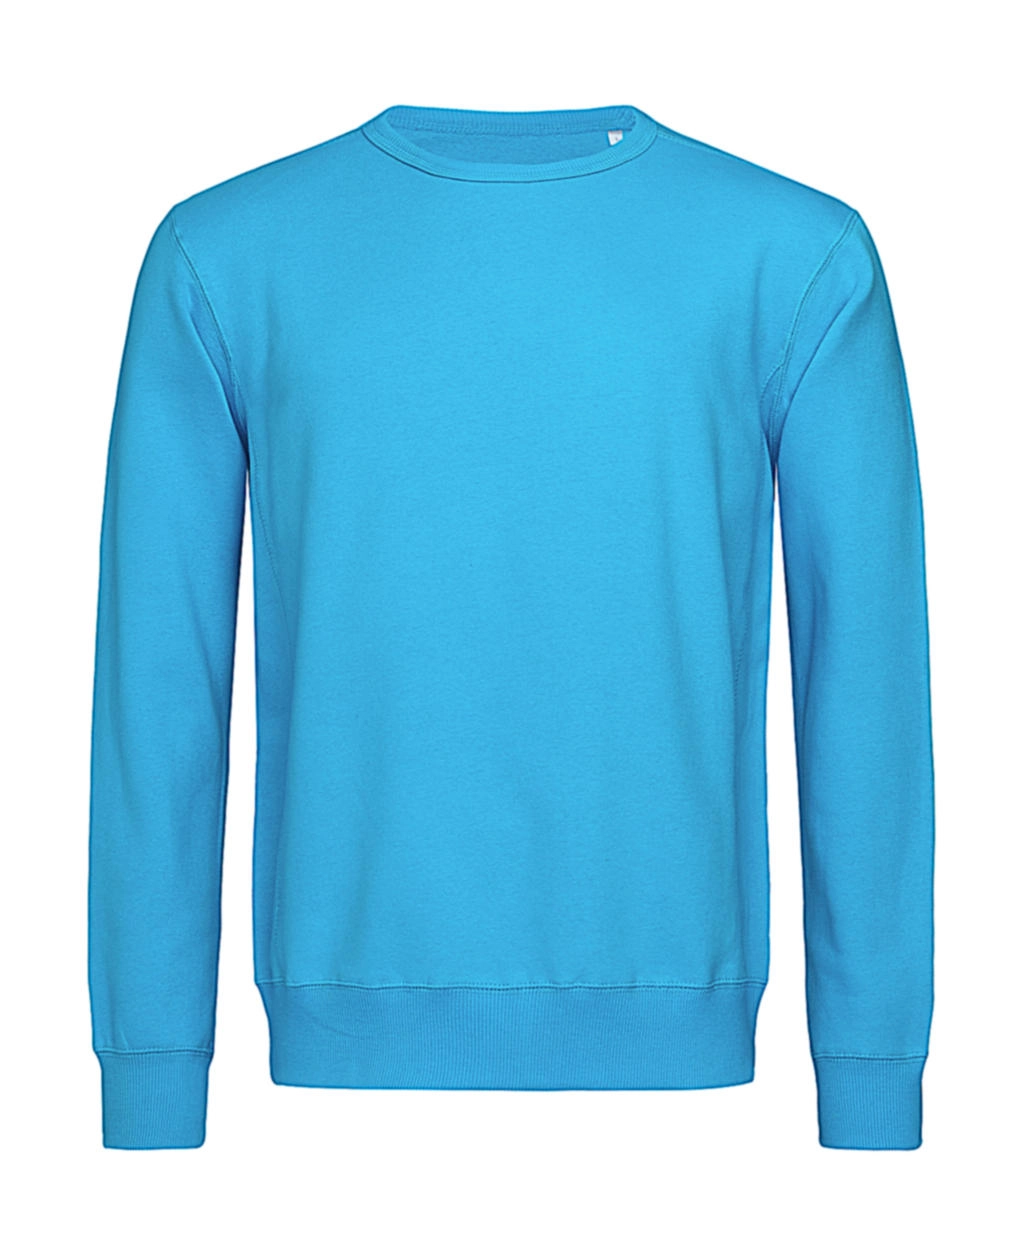 Sweatshirt Select zum Besticken und Bedrucken in der Farbe Hawaii Blue mit Ihren Logo, Schriftzug oder Motiv.